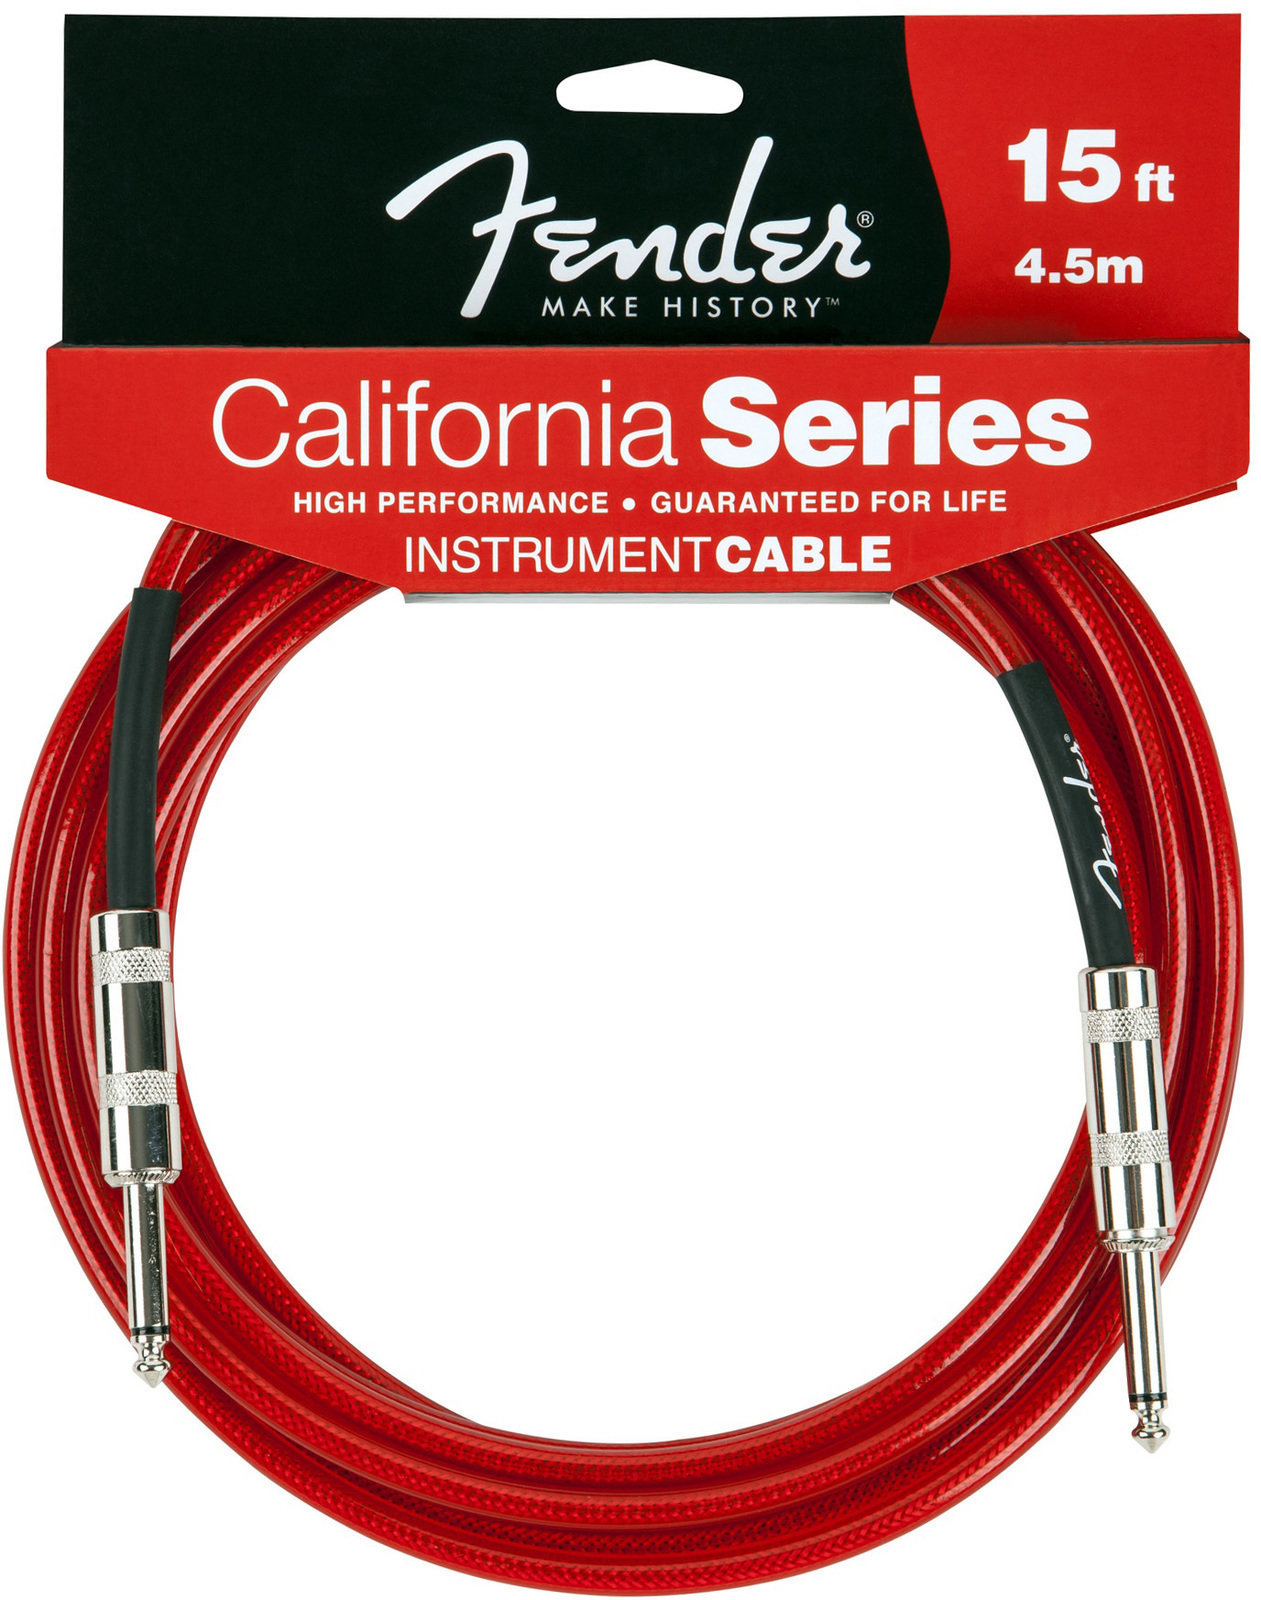 Καλώδιο Μουσικού Οργάνου Fender California Instrument Cable 4,5m - Candy Apple Red